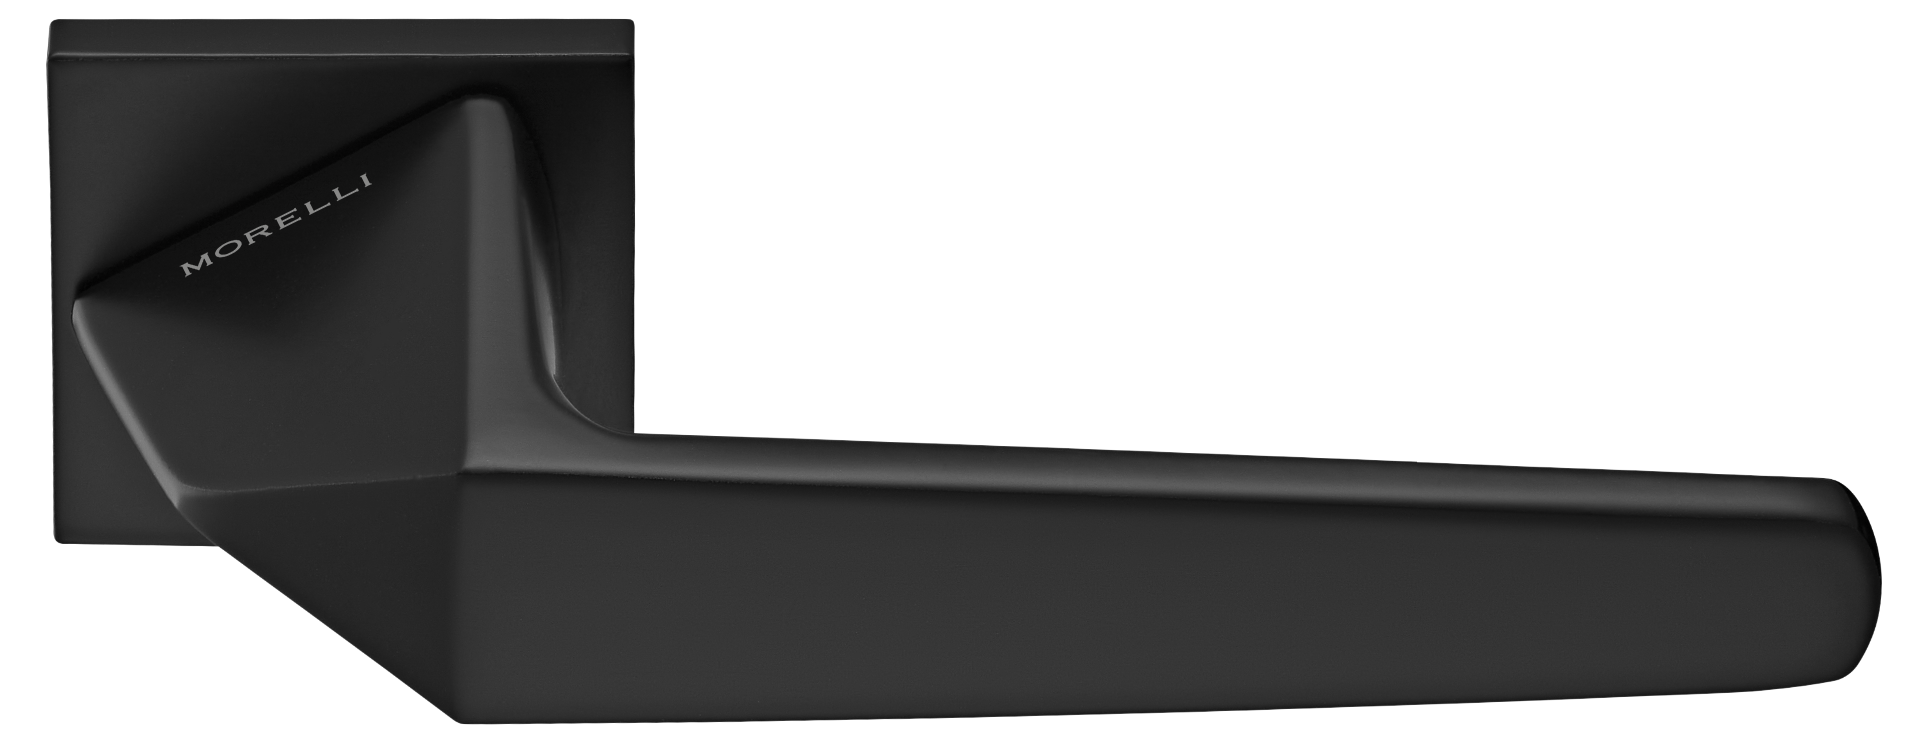 SOUK ручка дверная на квадратной розетке 6 мм, MH-55-S6 BL, цвет - черный фото купить Хабаровск